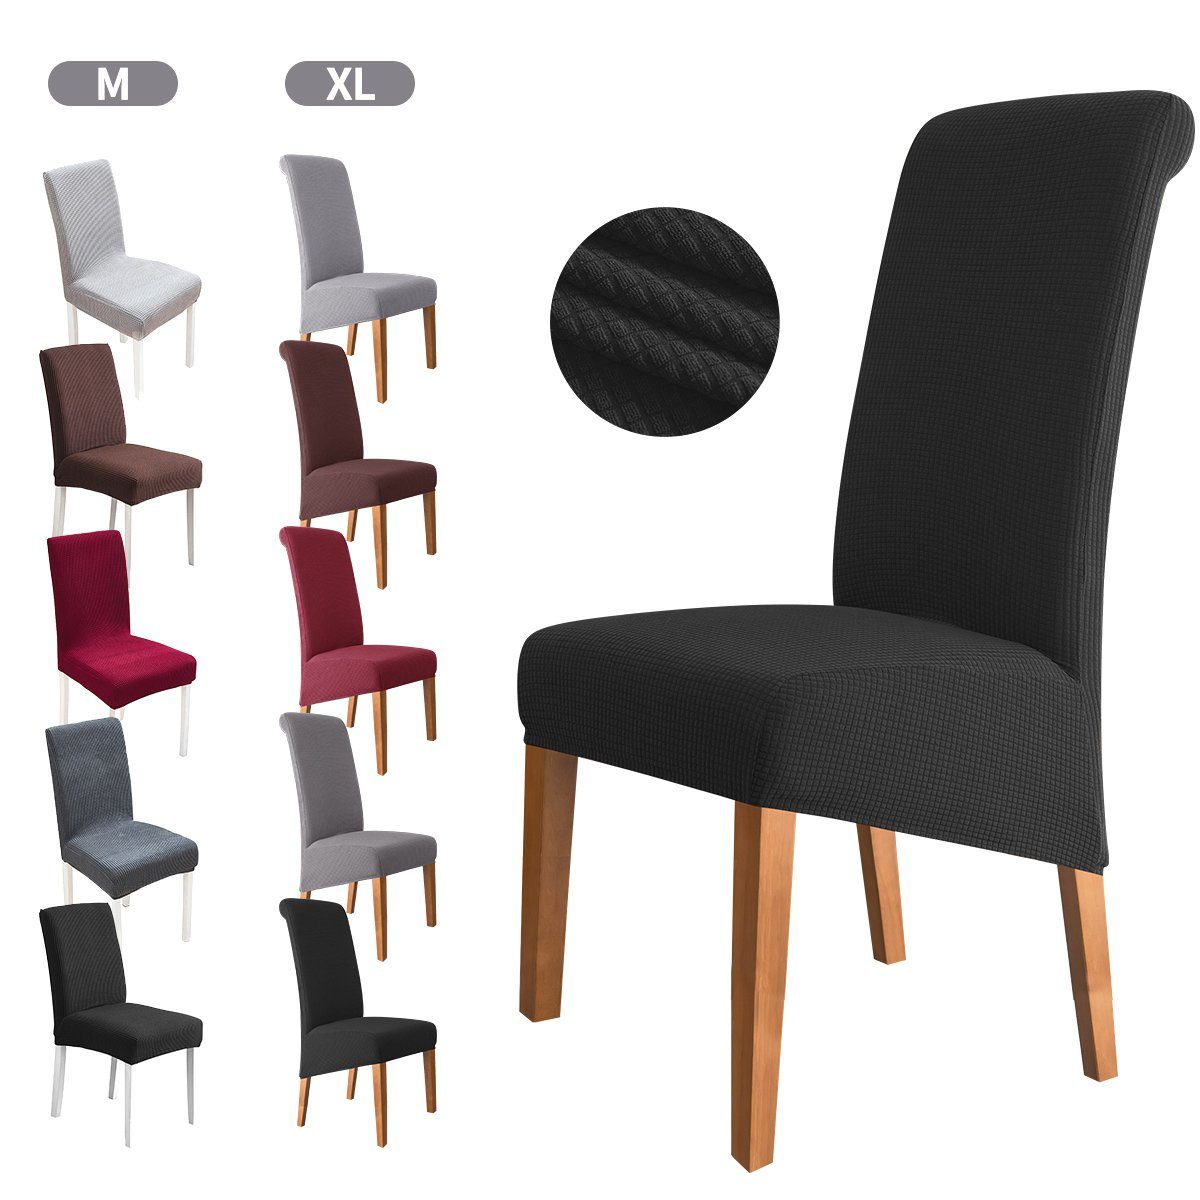 schwarz-XL MULISOFT, für Gummiband mit Waschbar Stuhlhussen, Hussen Sitzflächenhusse Stretch Abnehmbare Stühle, Stuhlbezug